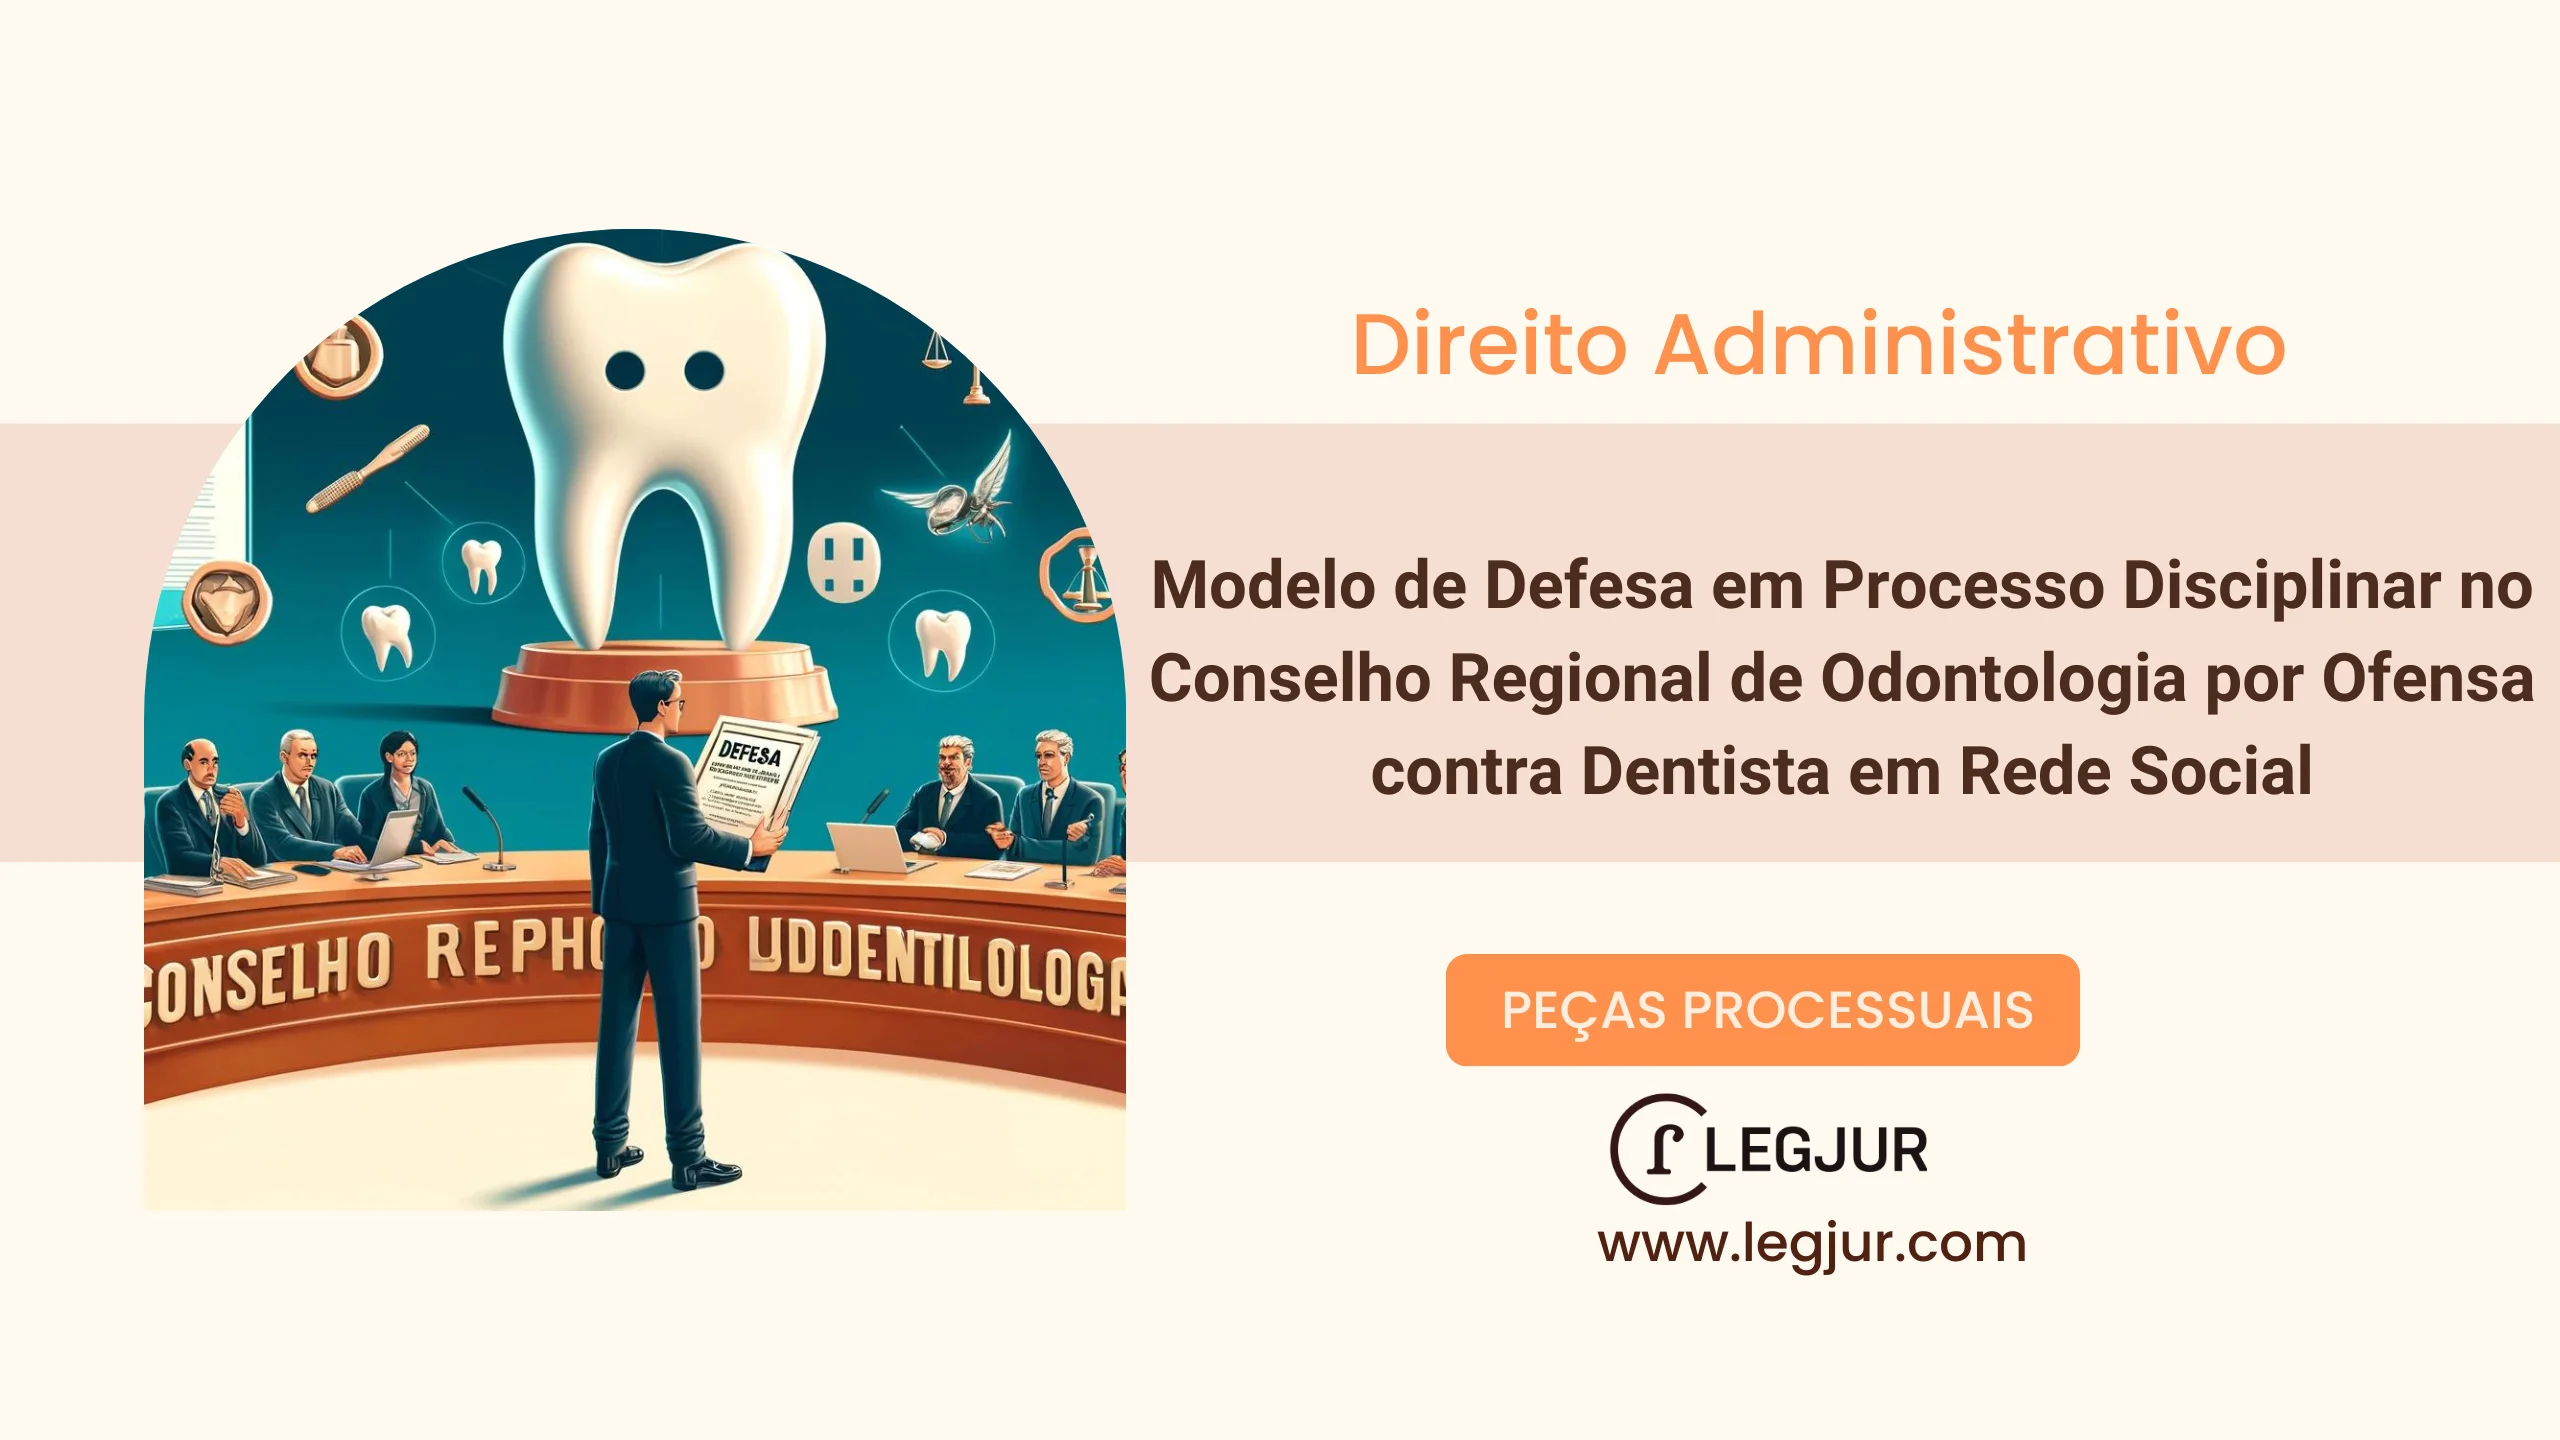 Modelo de Defesa em Processo Disciplinar no Conselho Regional de Odontologia por Ofensa contra Dentista em Rede Social